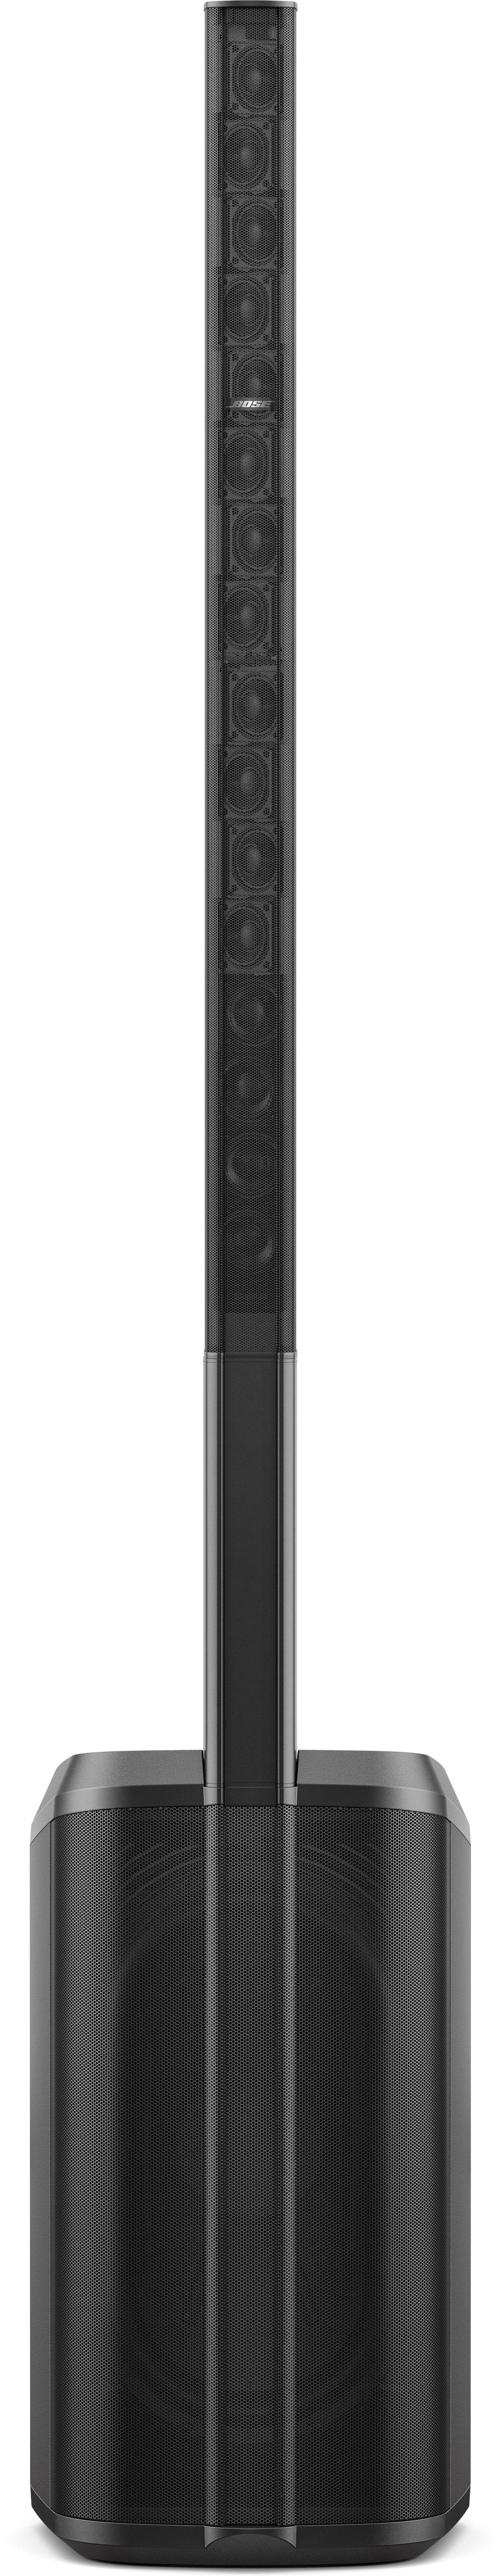 Bose L1 Pro16 Säulensystem - Ausstellungsstück